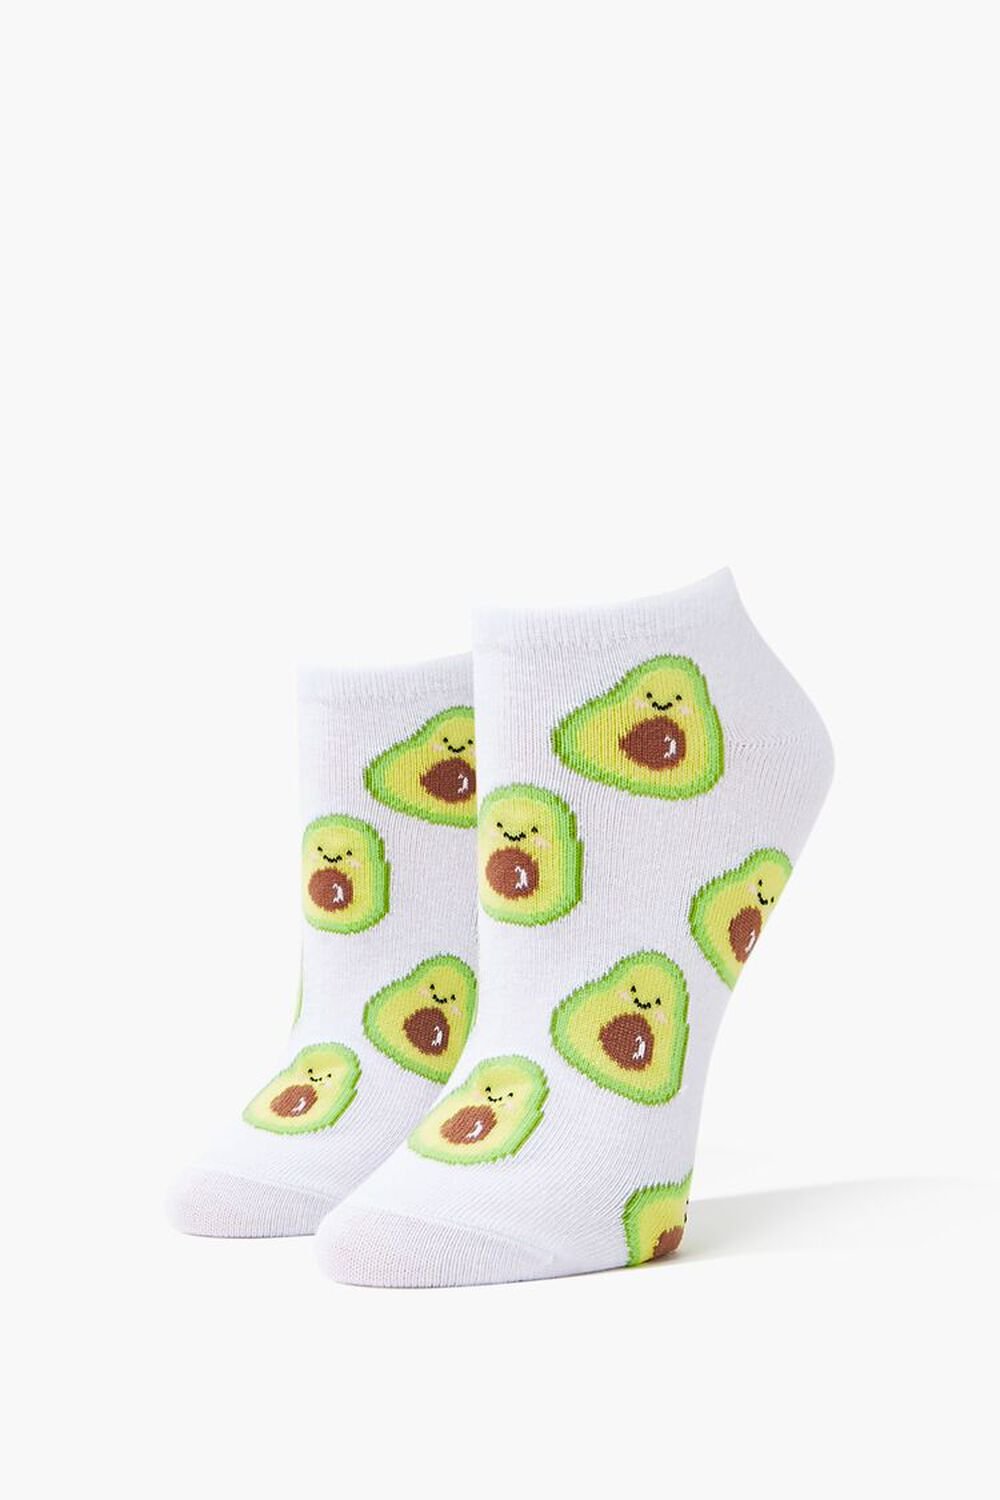 WHITE/MULTI Avocado Print Ankle Socks, image 1